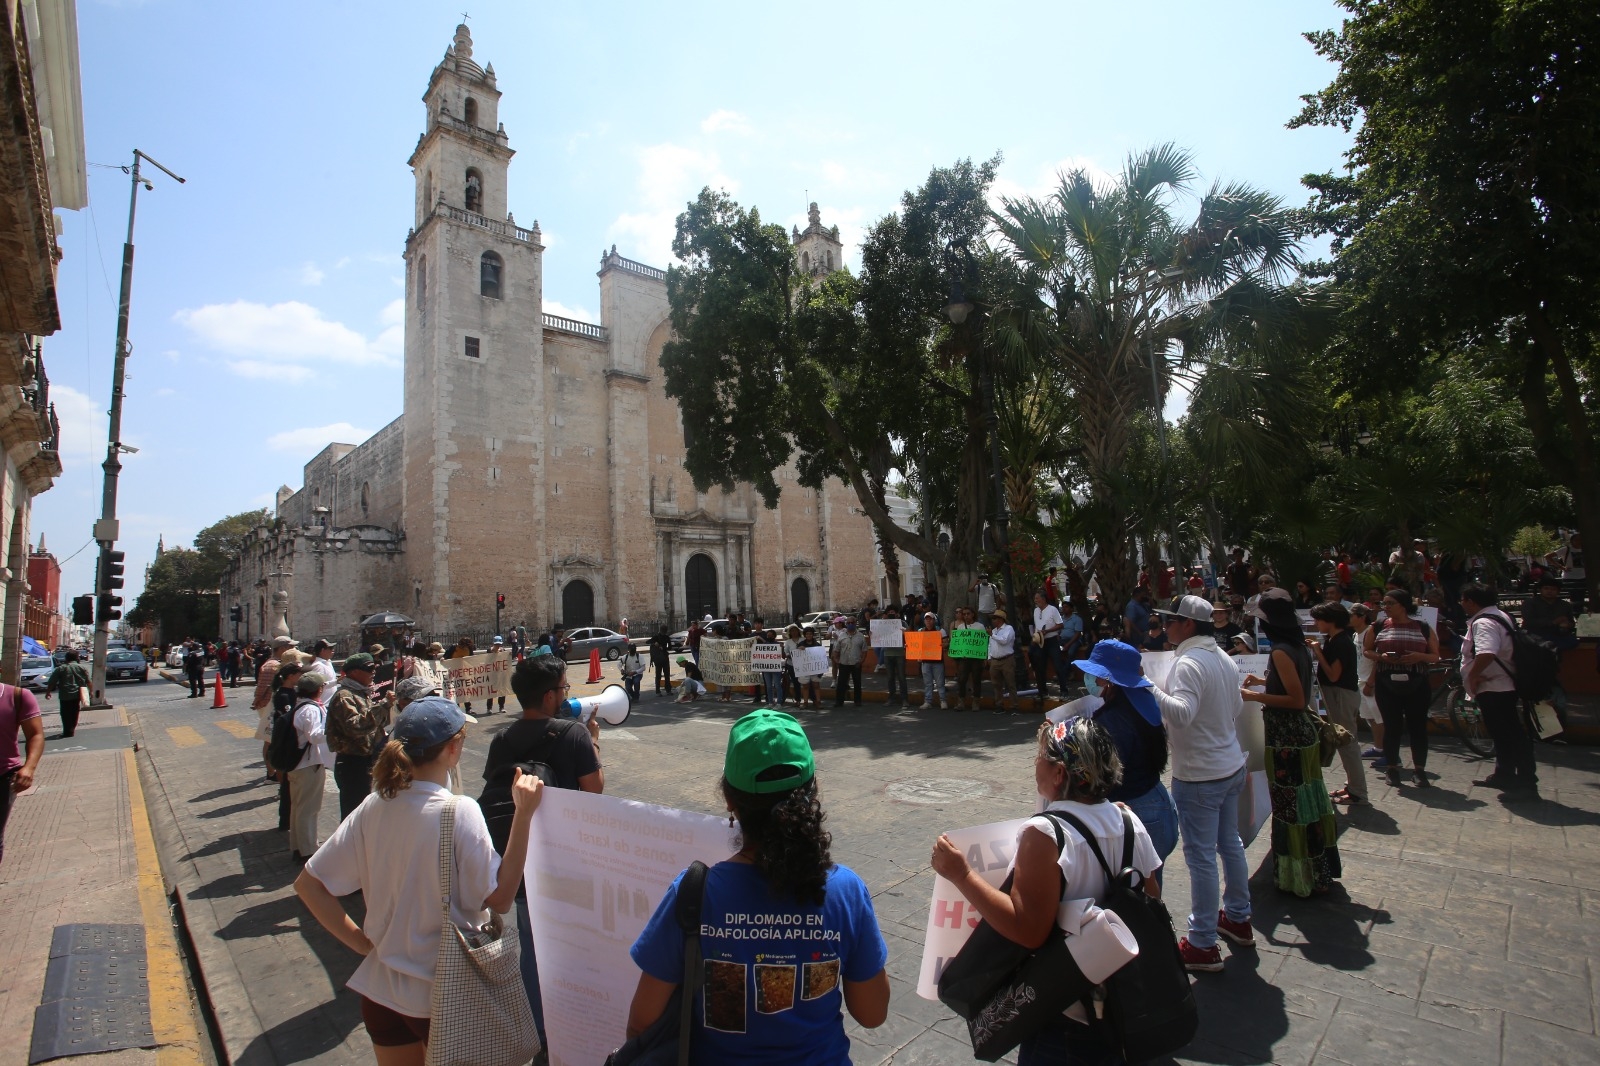 Ciudadanos protestan en solidaridad con Sitilpech en Mérida: "Es una lucha de todos"